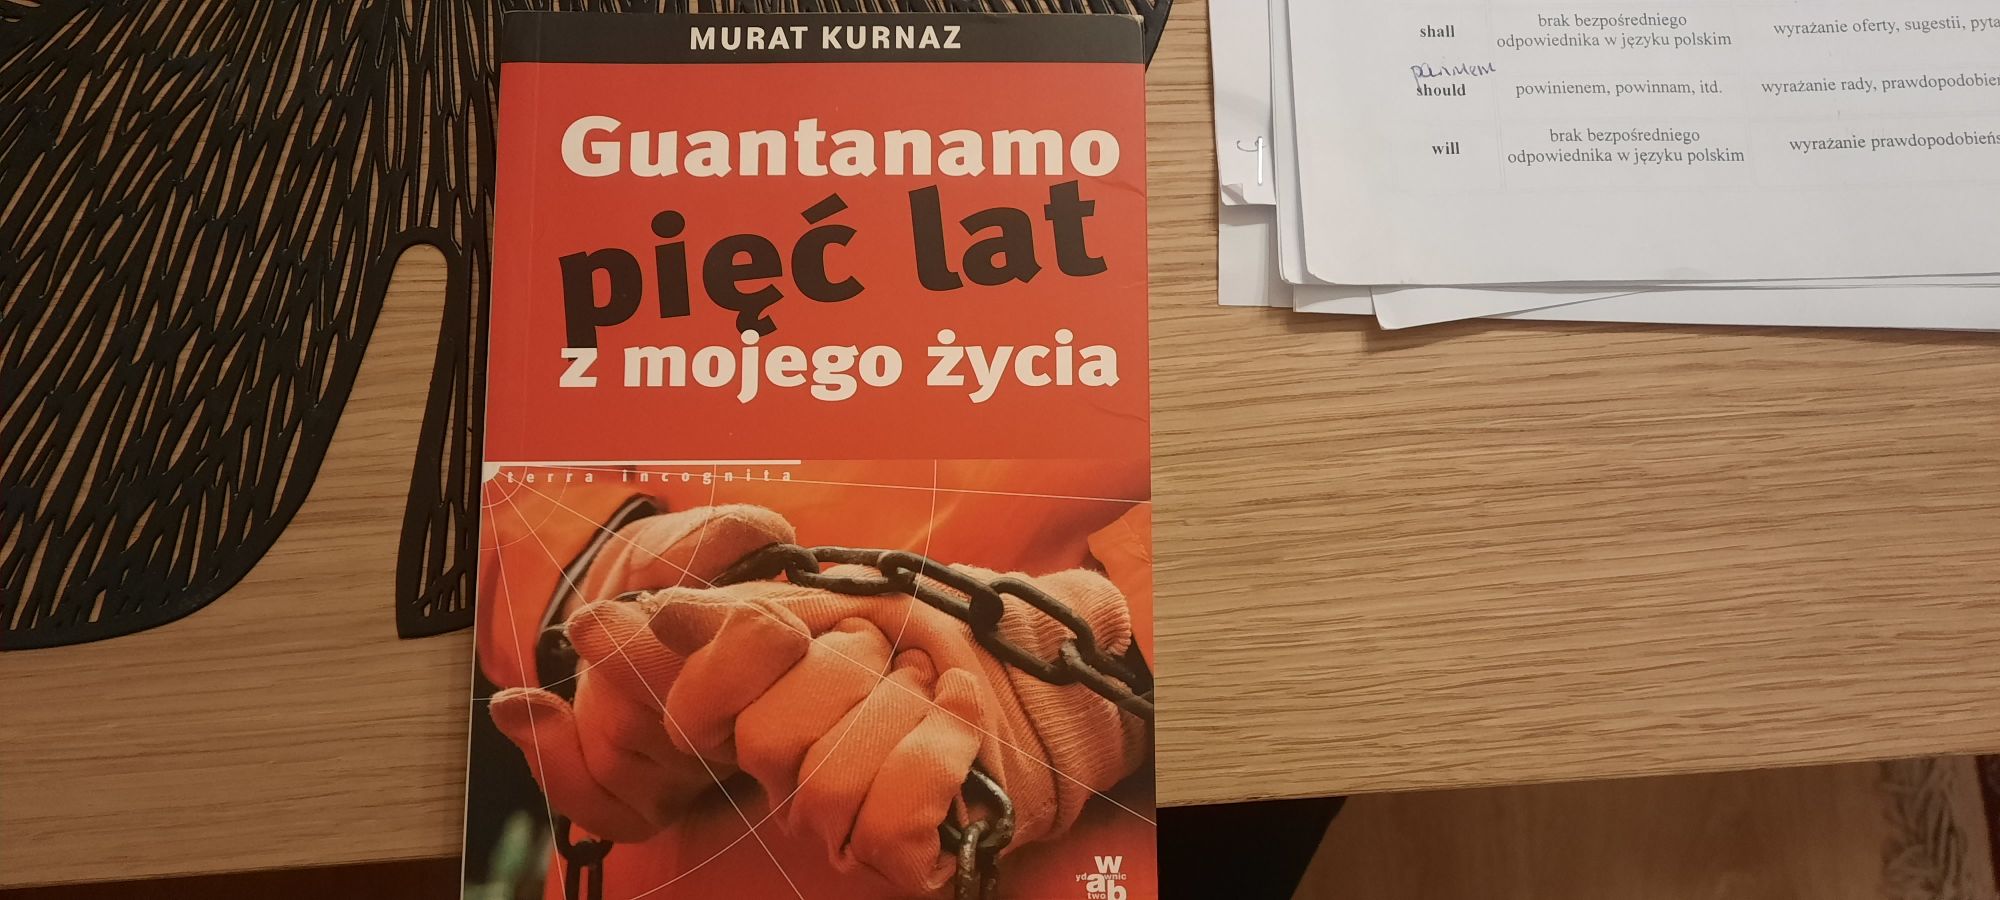 Guantanamo pięć lat z mojego życia